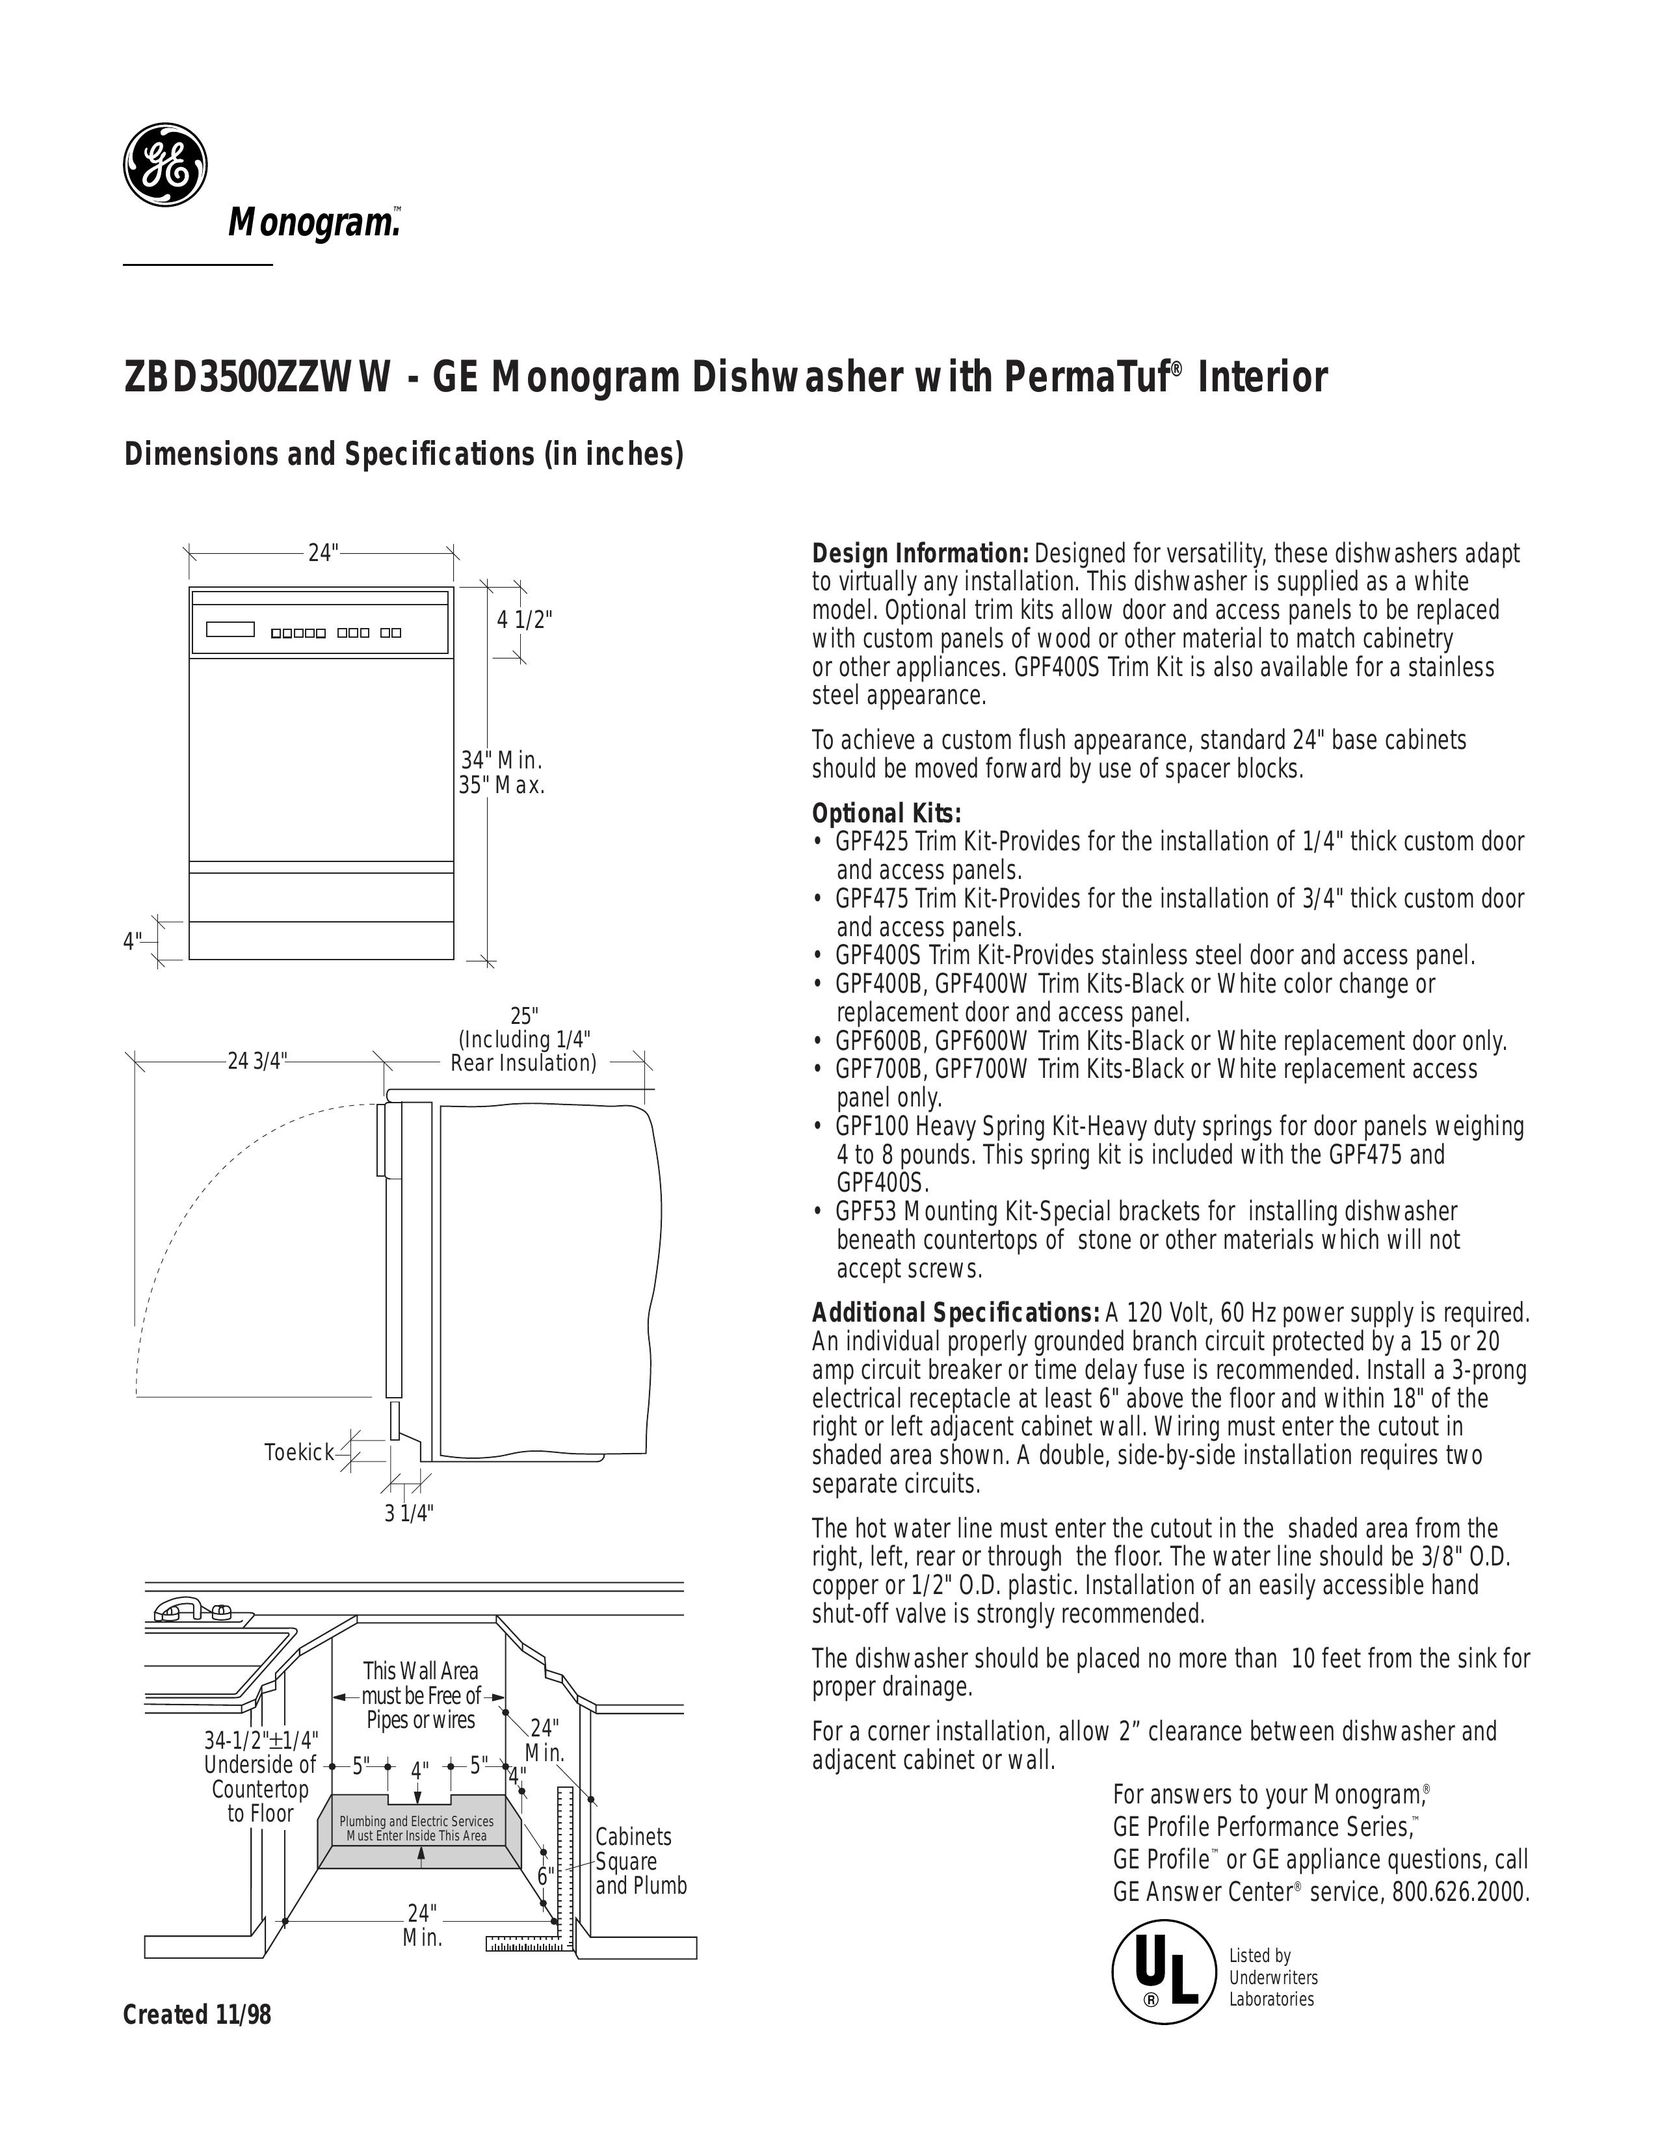 GE Monogram ZBD3500ZZWW Switch User Manual